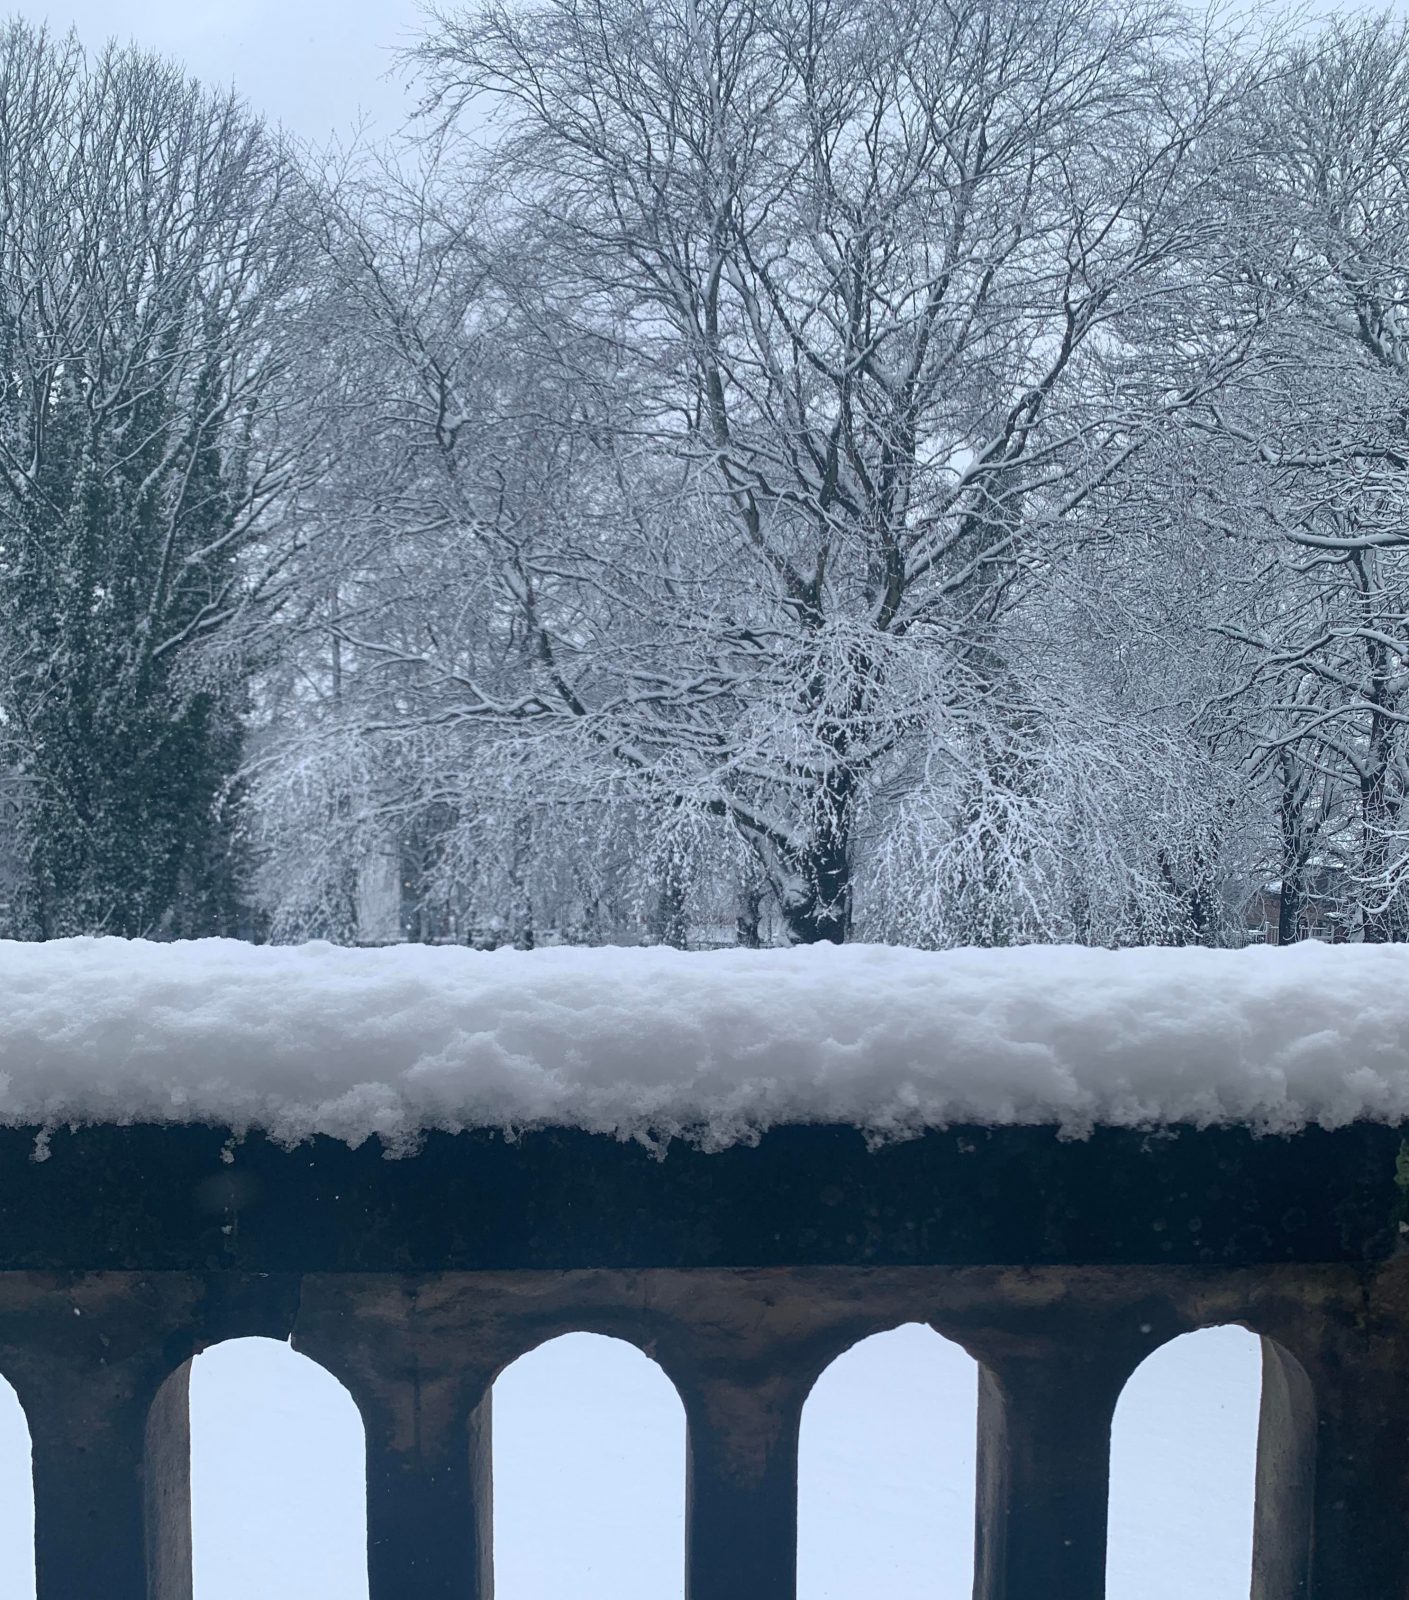 Leeds in the snow. 